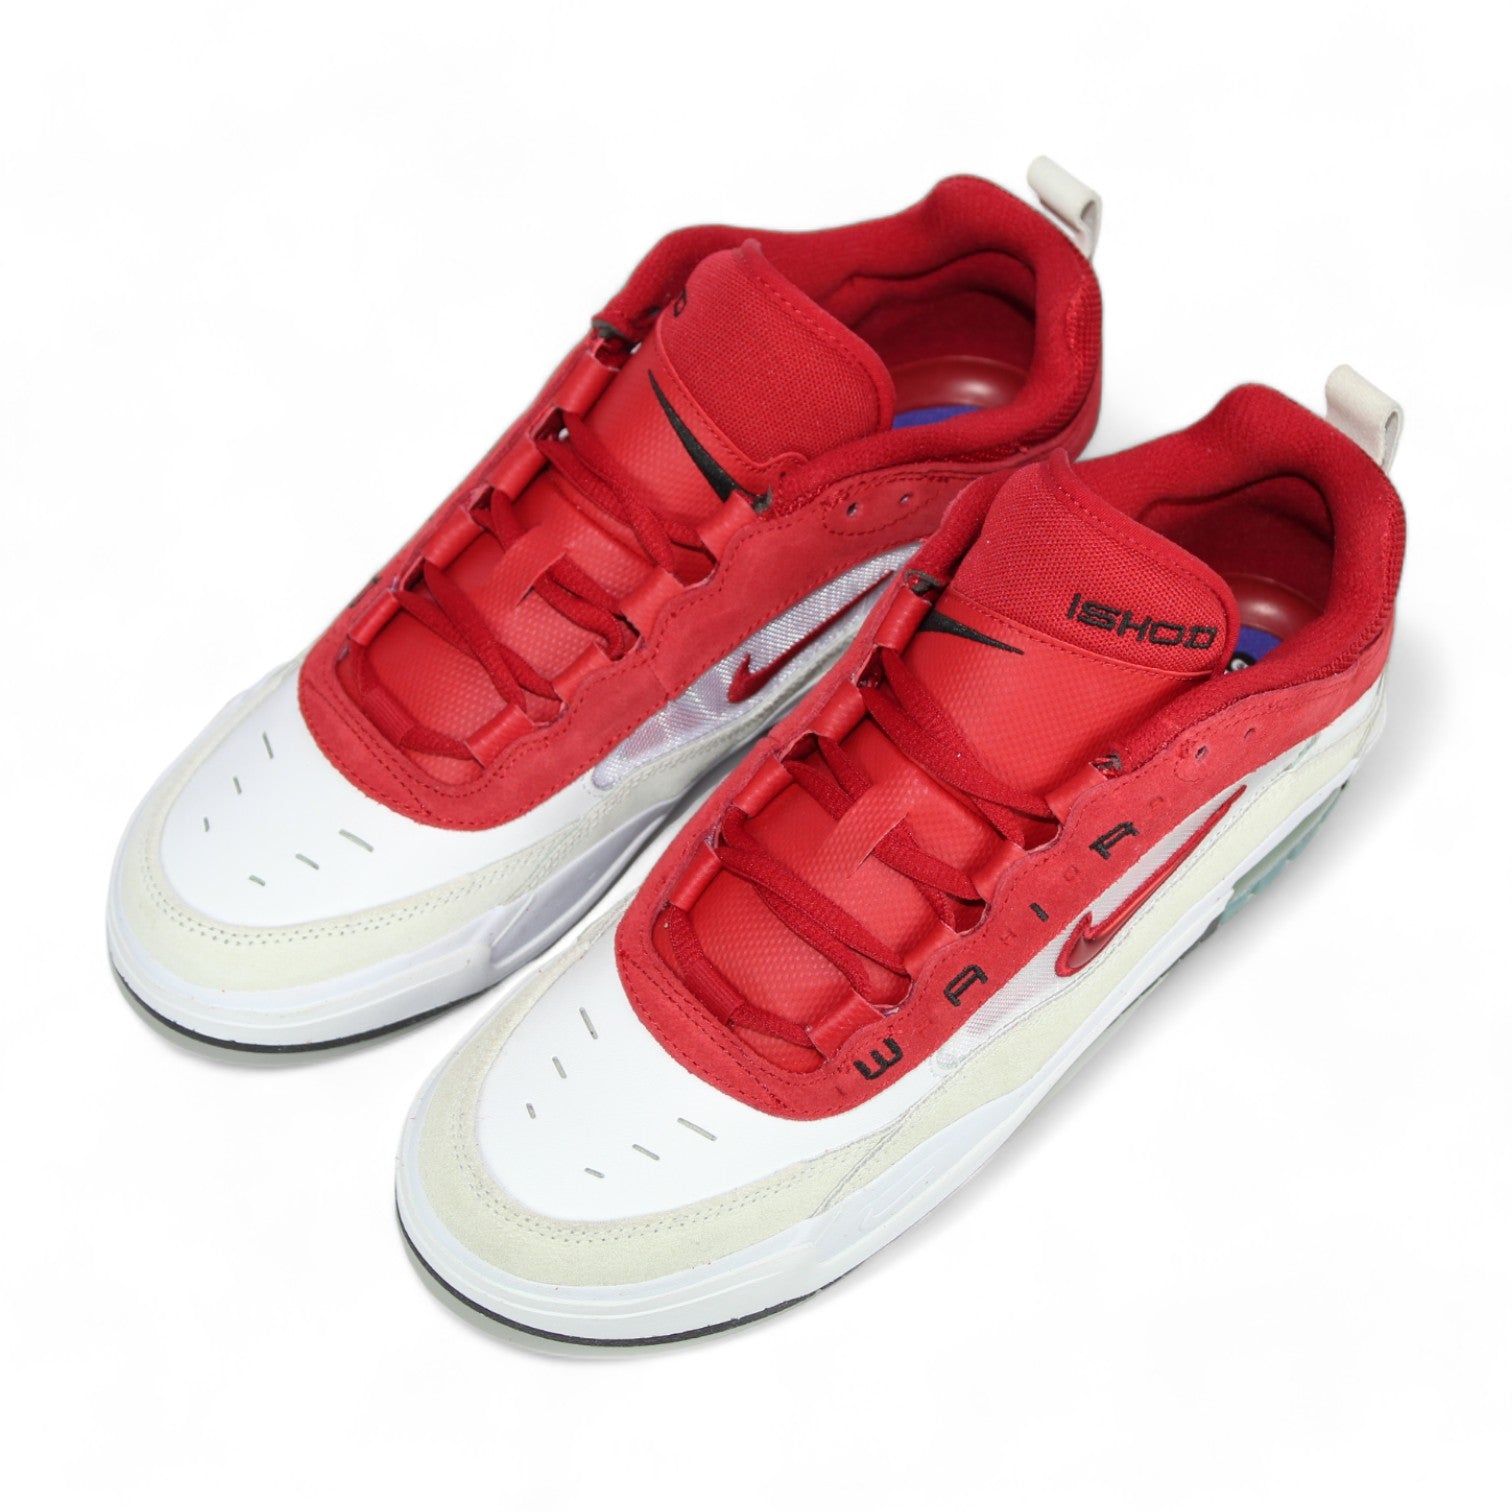 Nike SB Air Max Ishod Wair 2 - White/Varsity Red